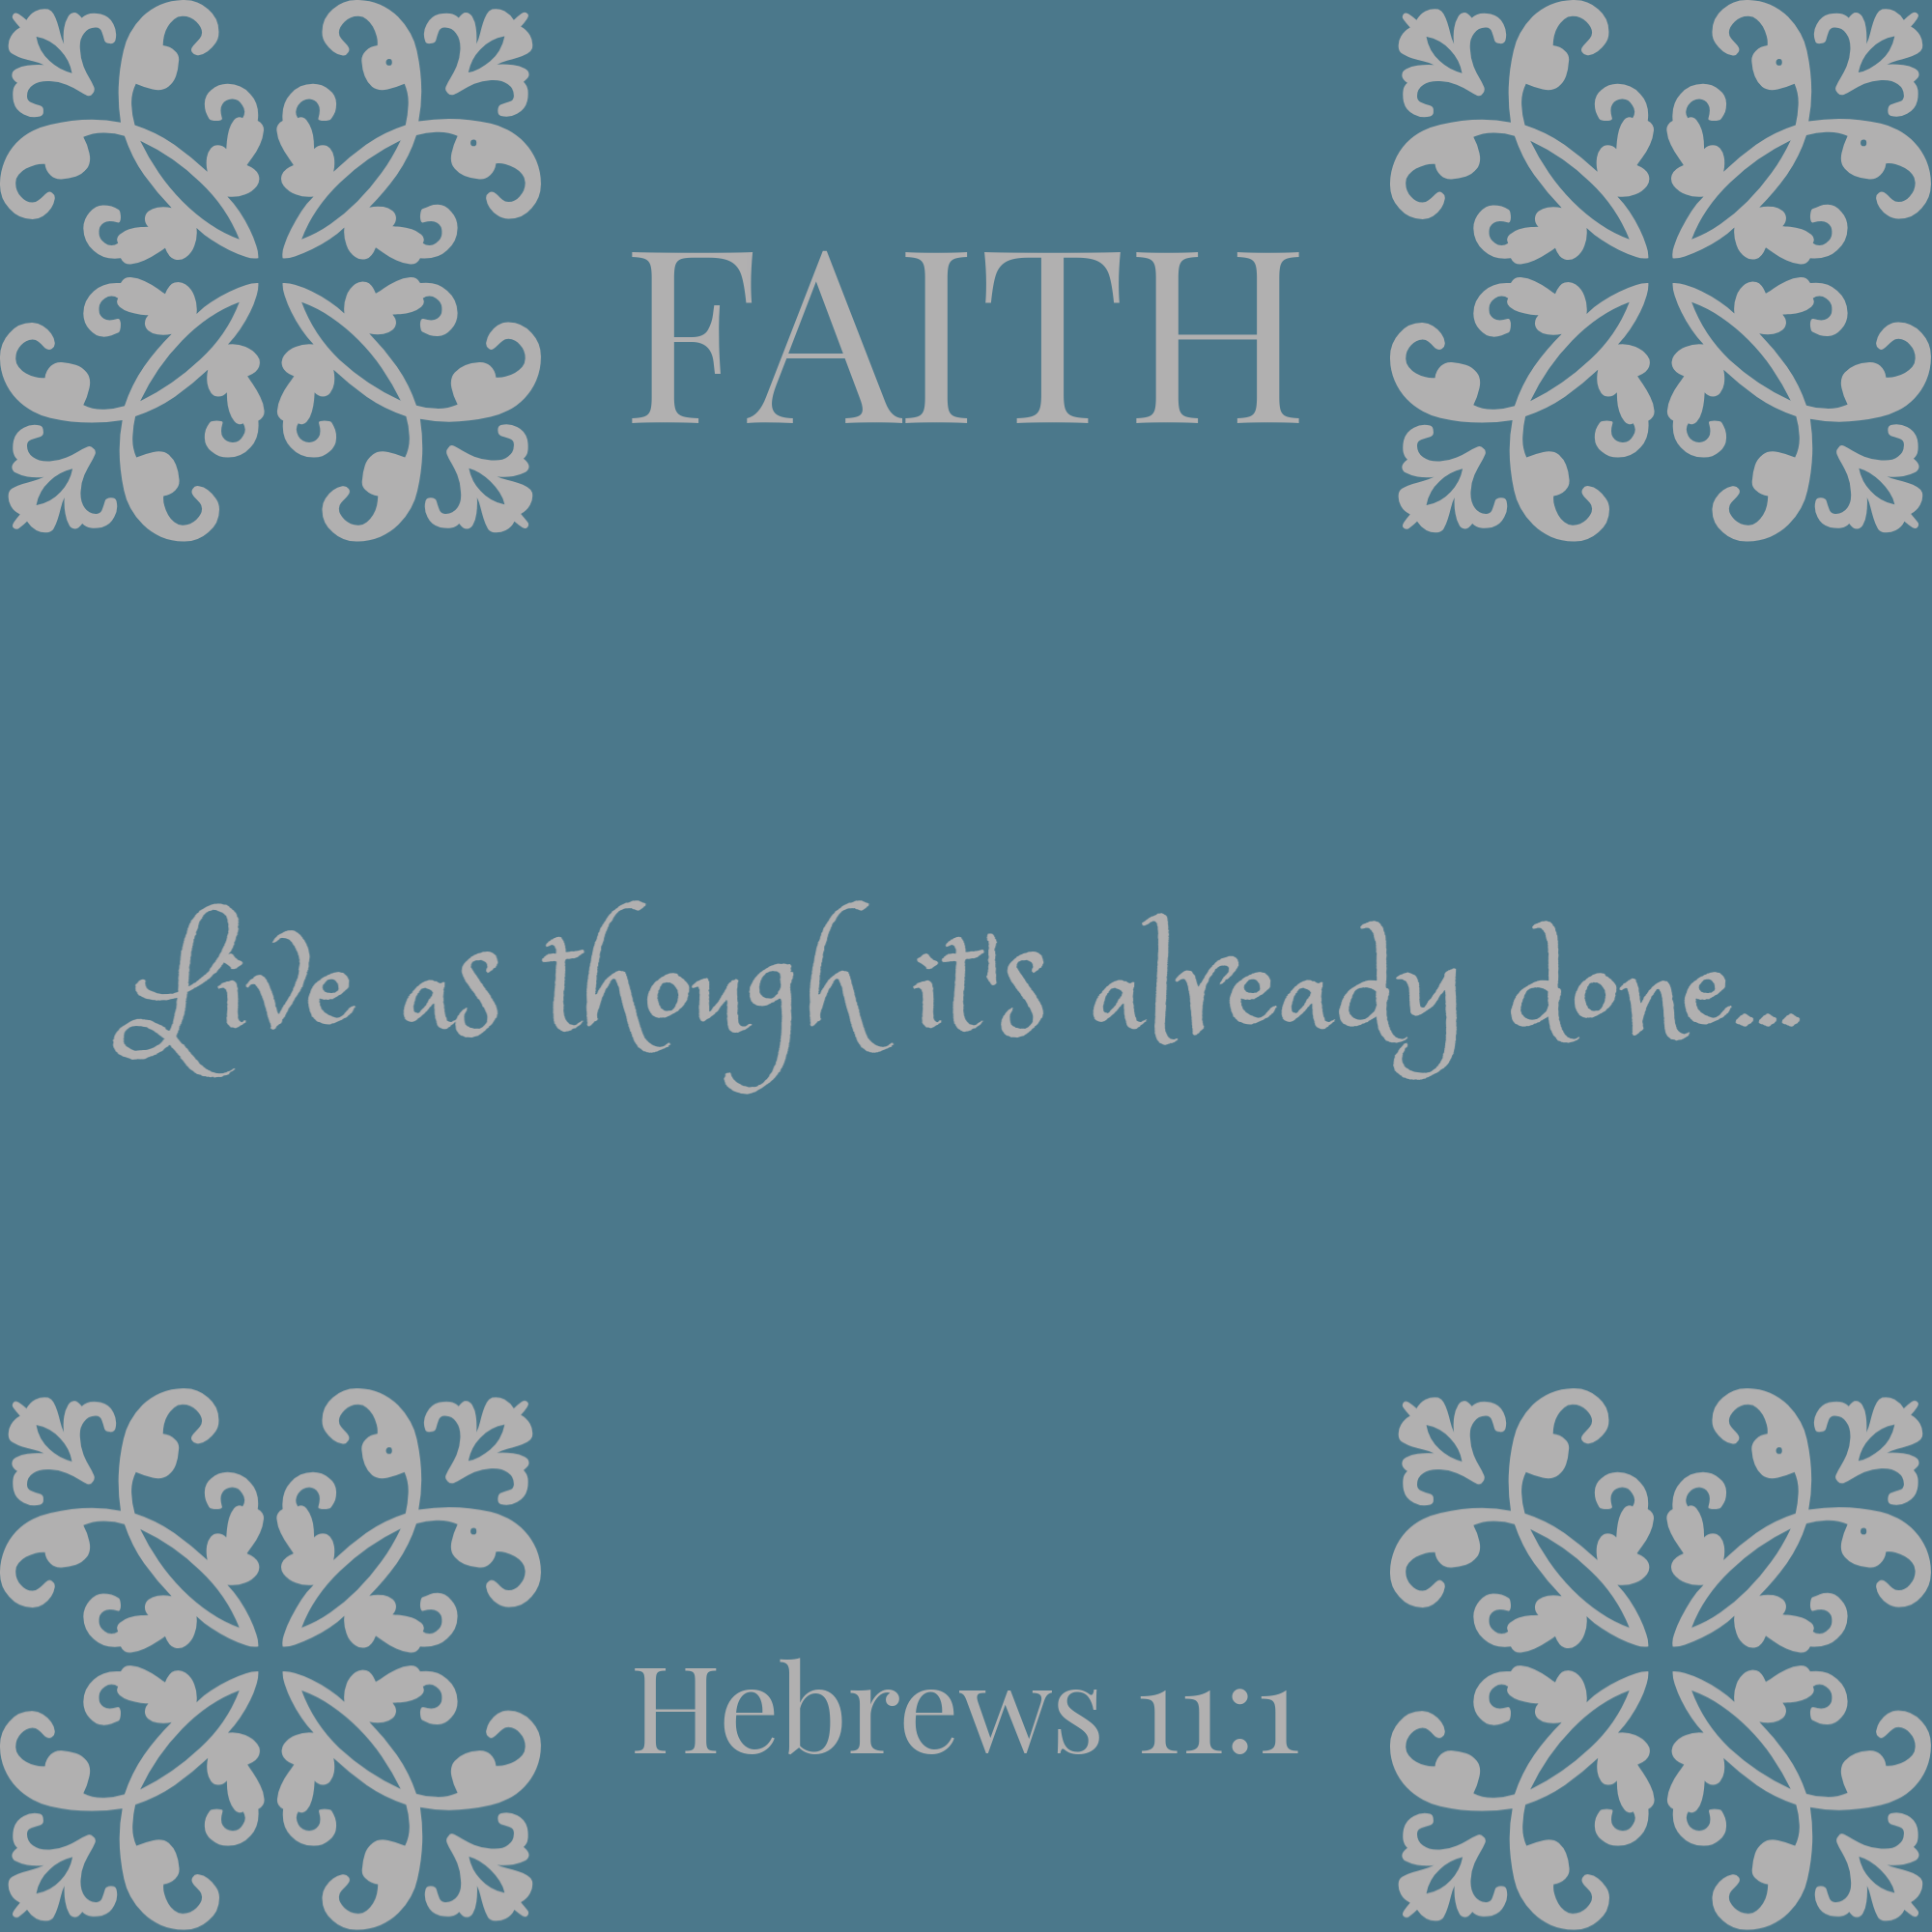 Faith {living outside the stacks}